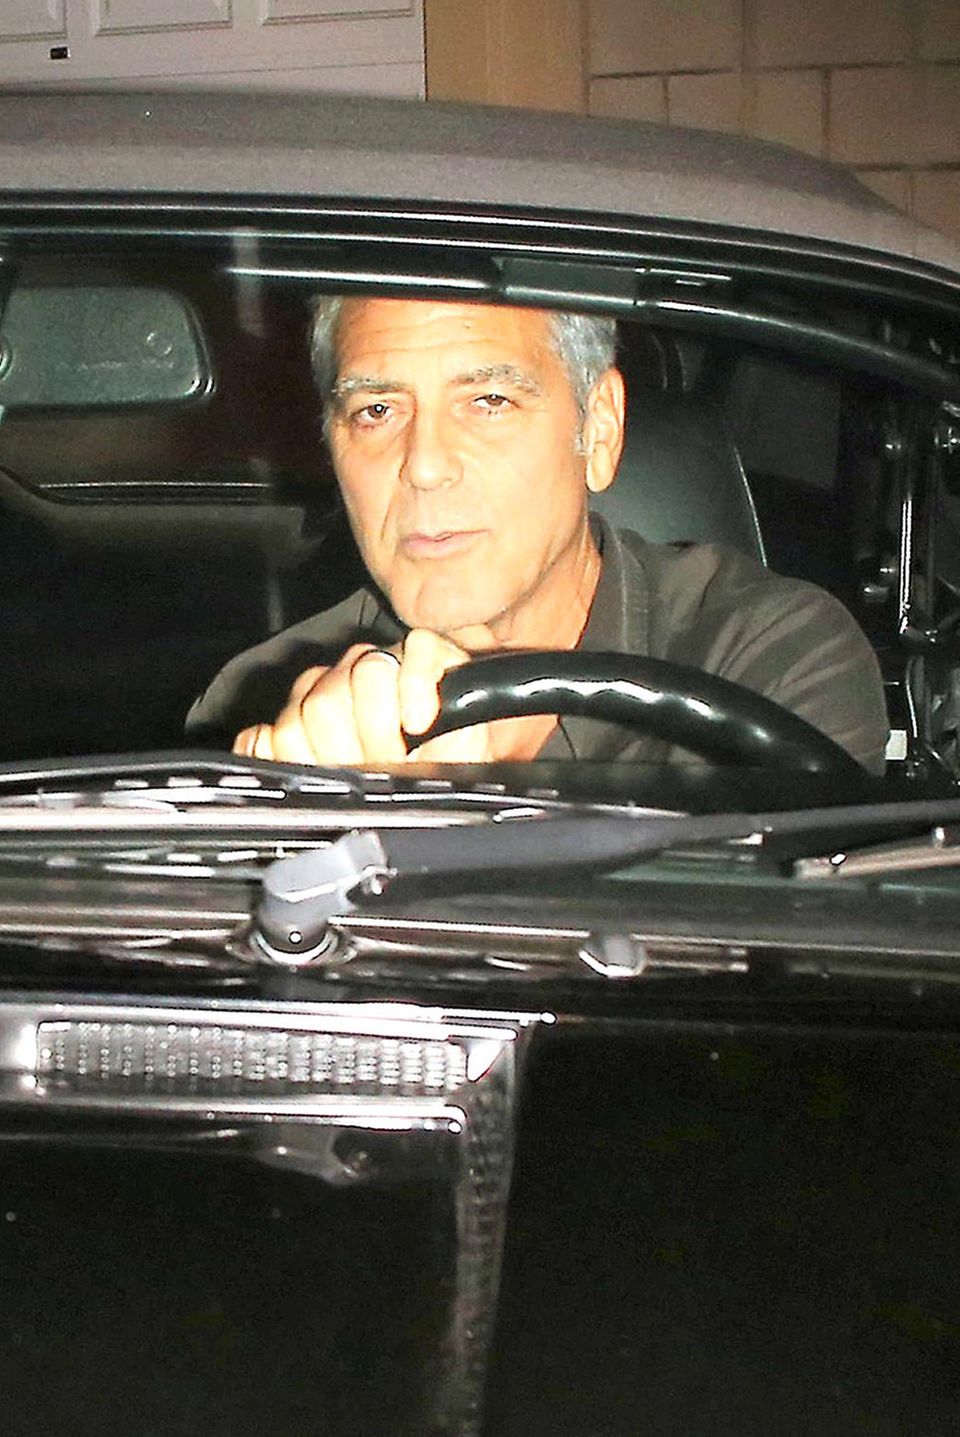 Rande Gerber + George Clooney